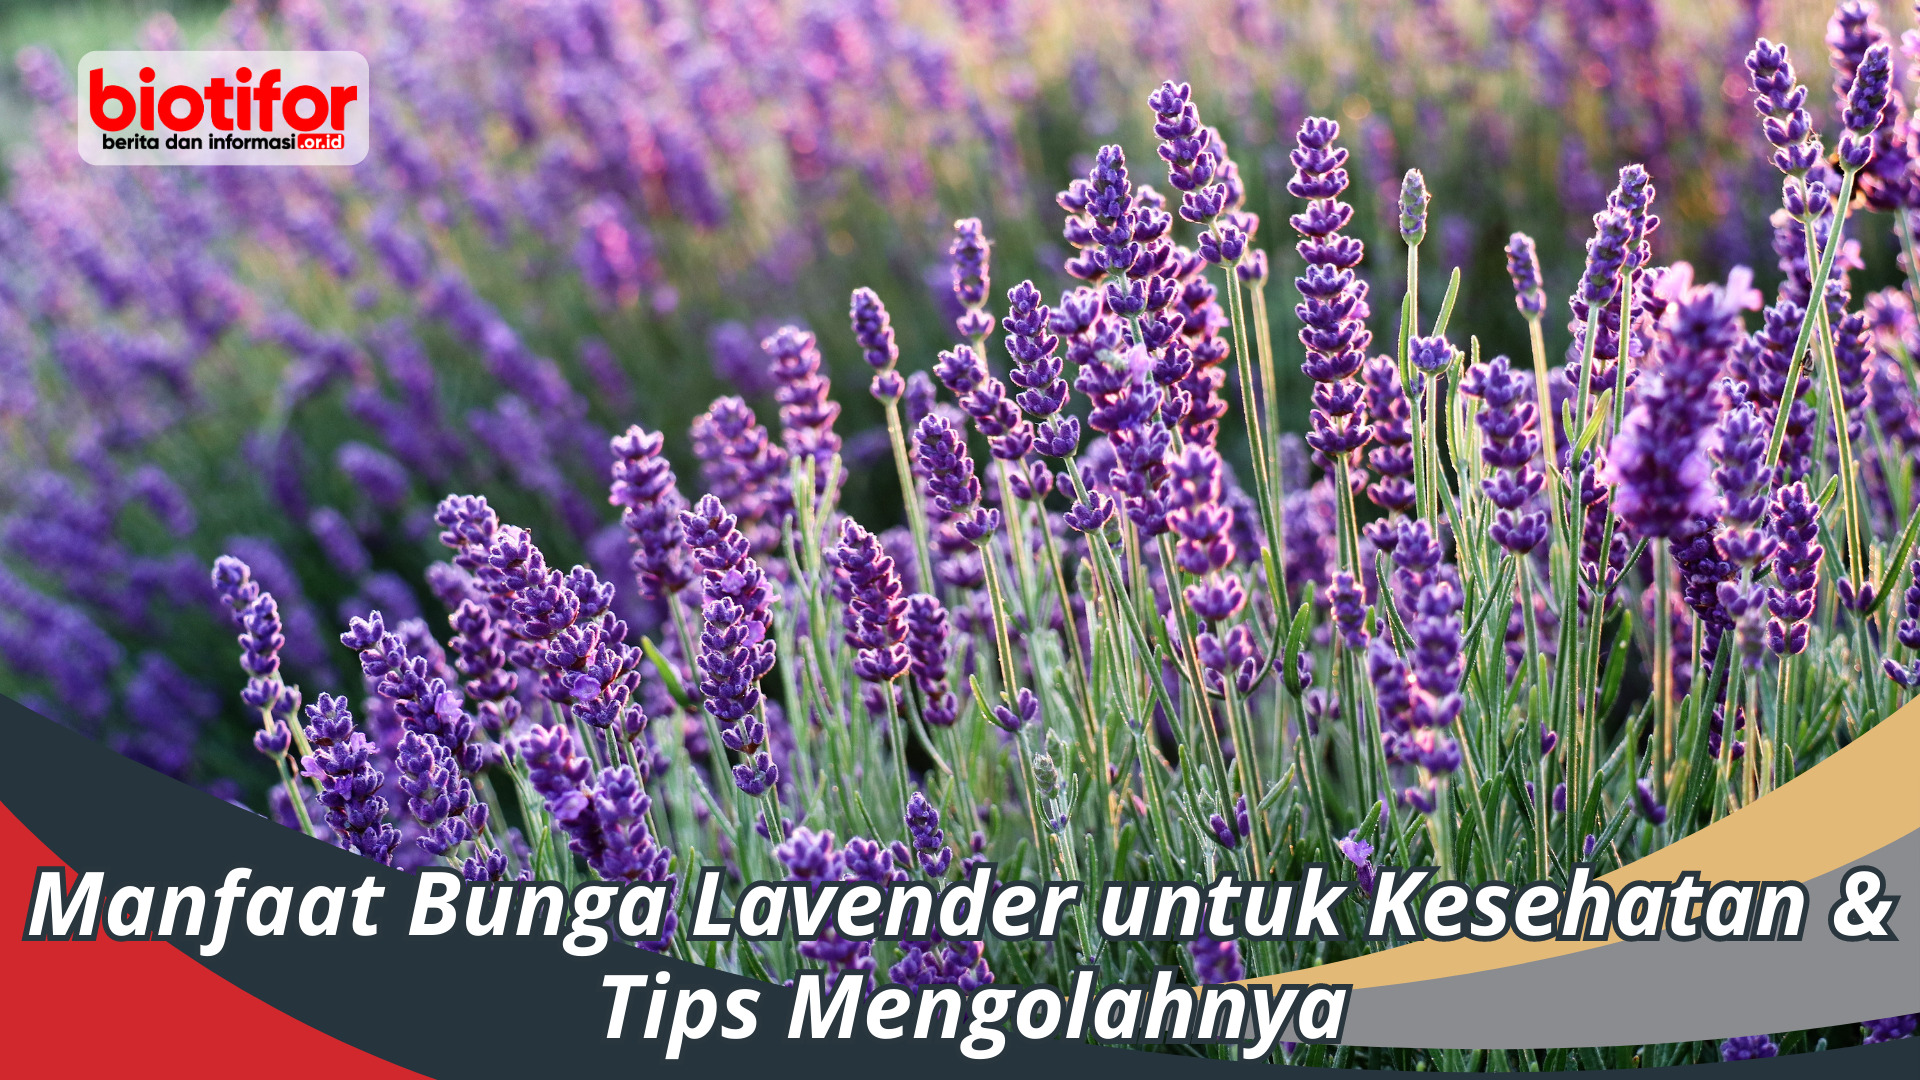 Manfaat bunga Lavender